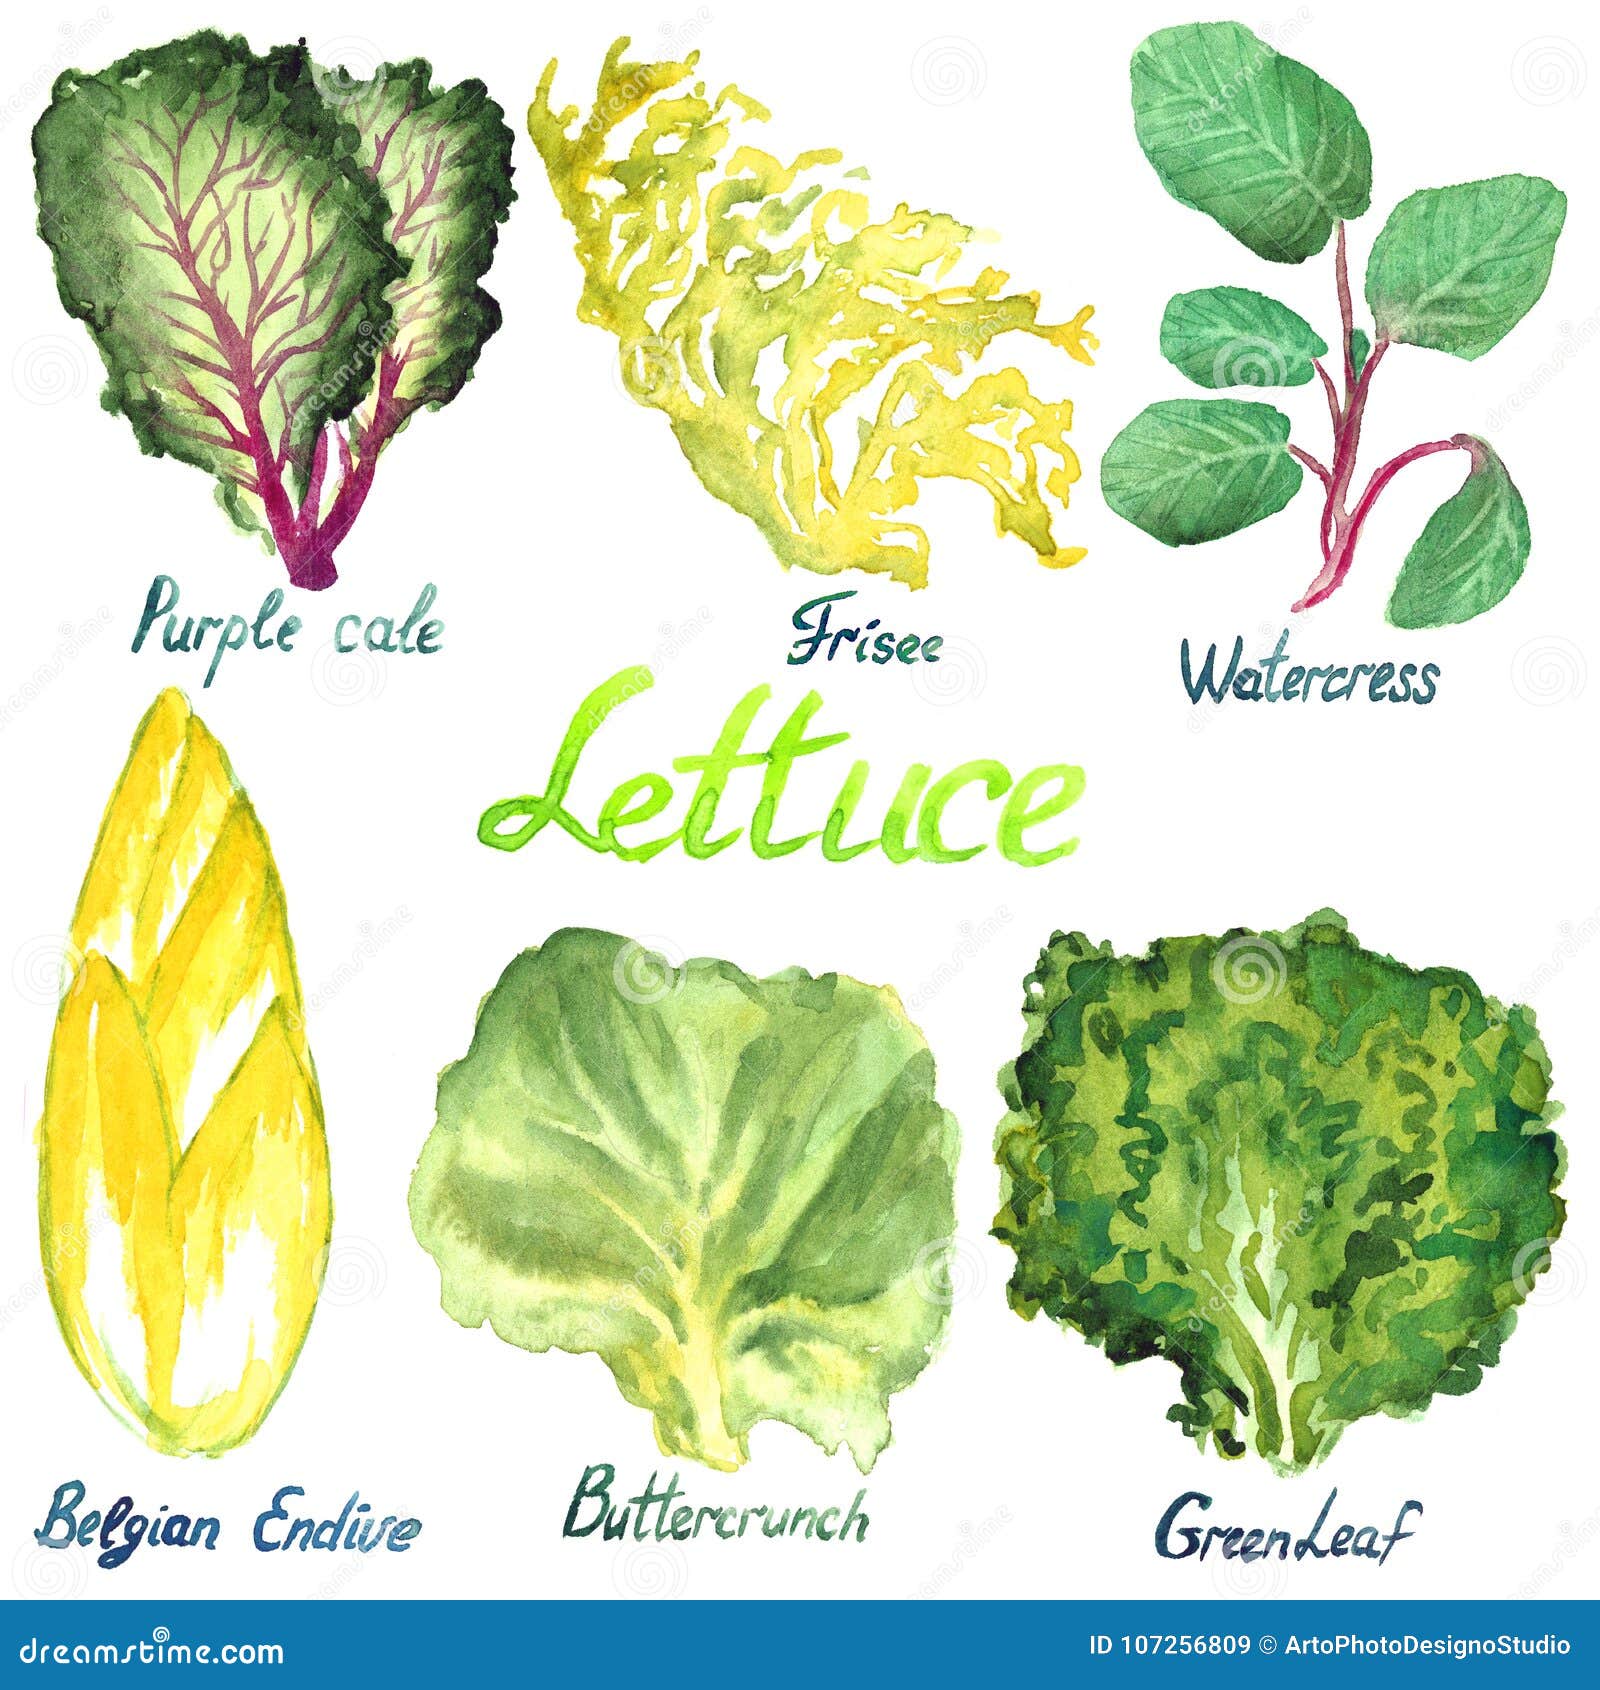 Lettuce перевод на русский. Листья бельгийский салат. Салат растение виды с картинками. Схематично салат растение  рисунок. Эндивий рисунок.